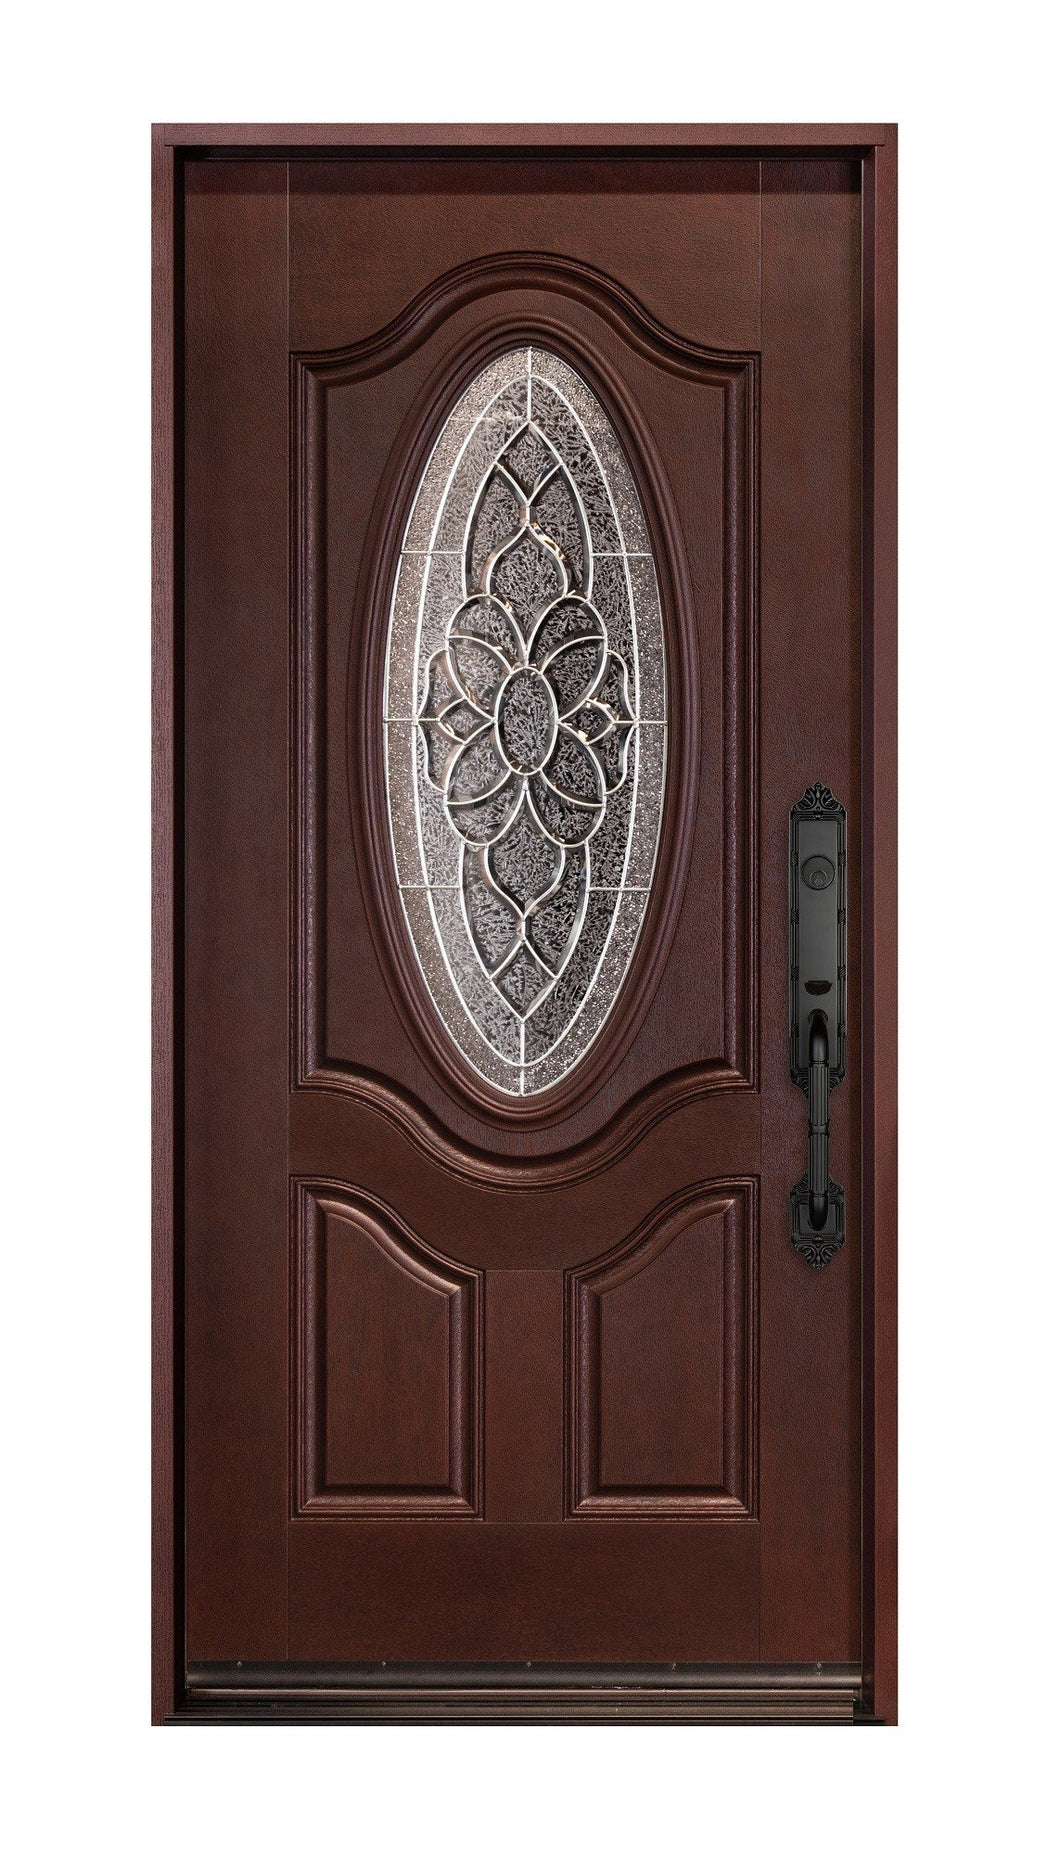 Montrouge Fiberglass Single Door